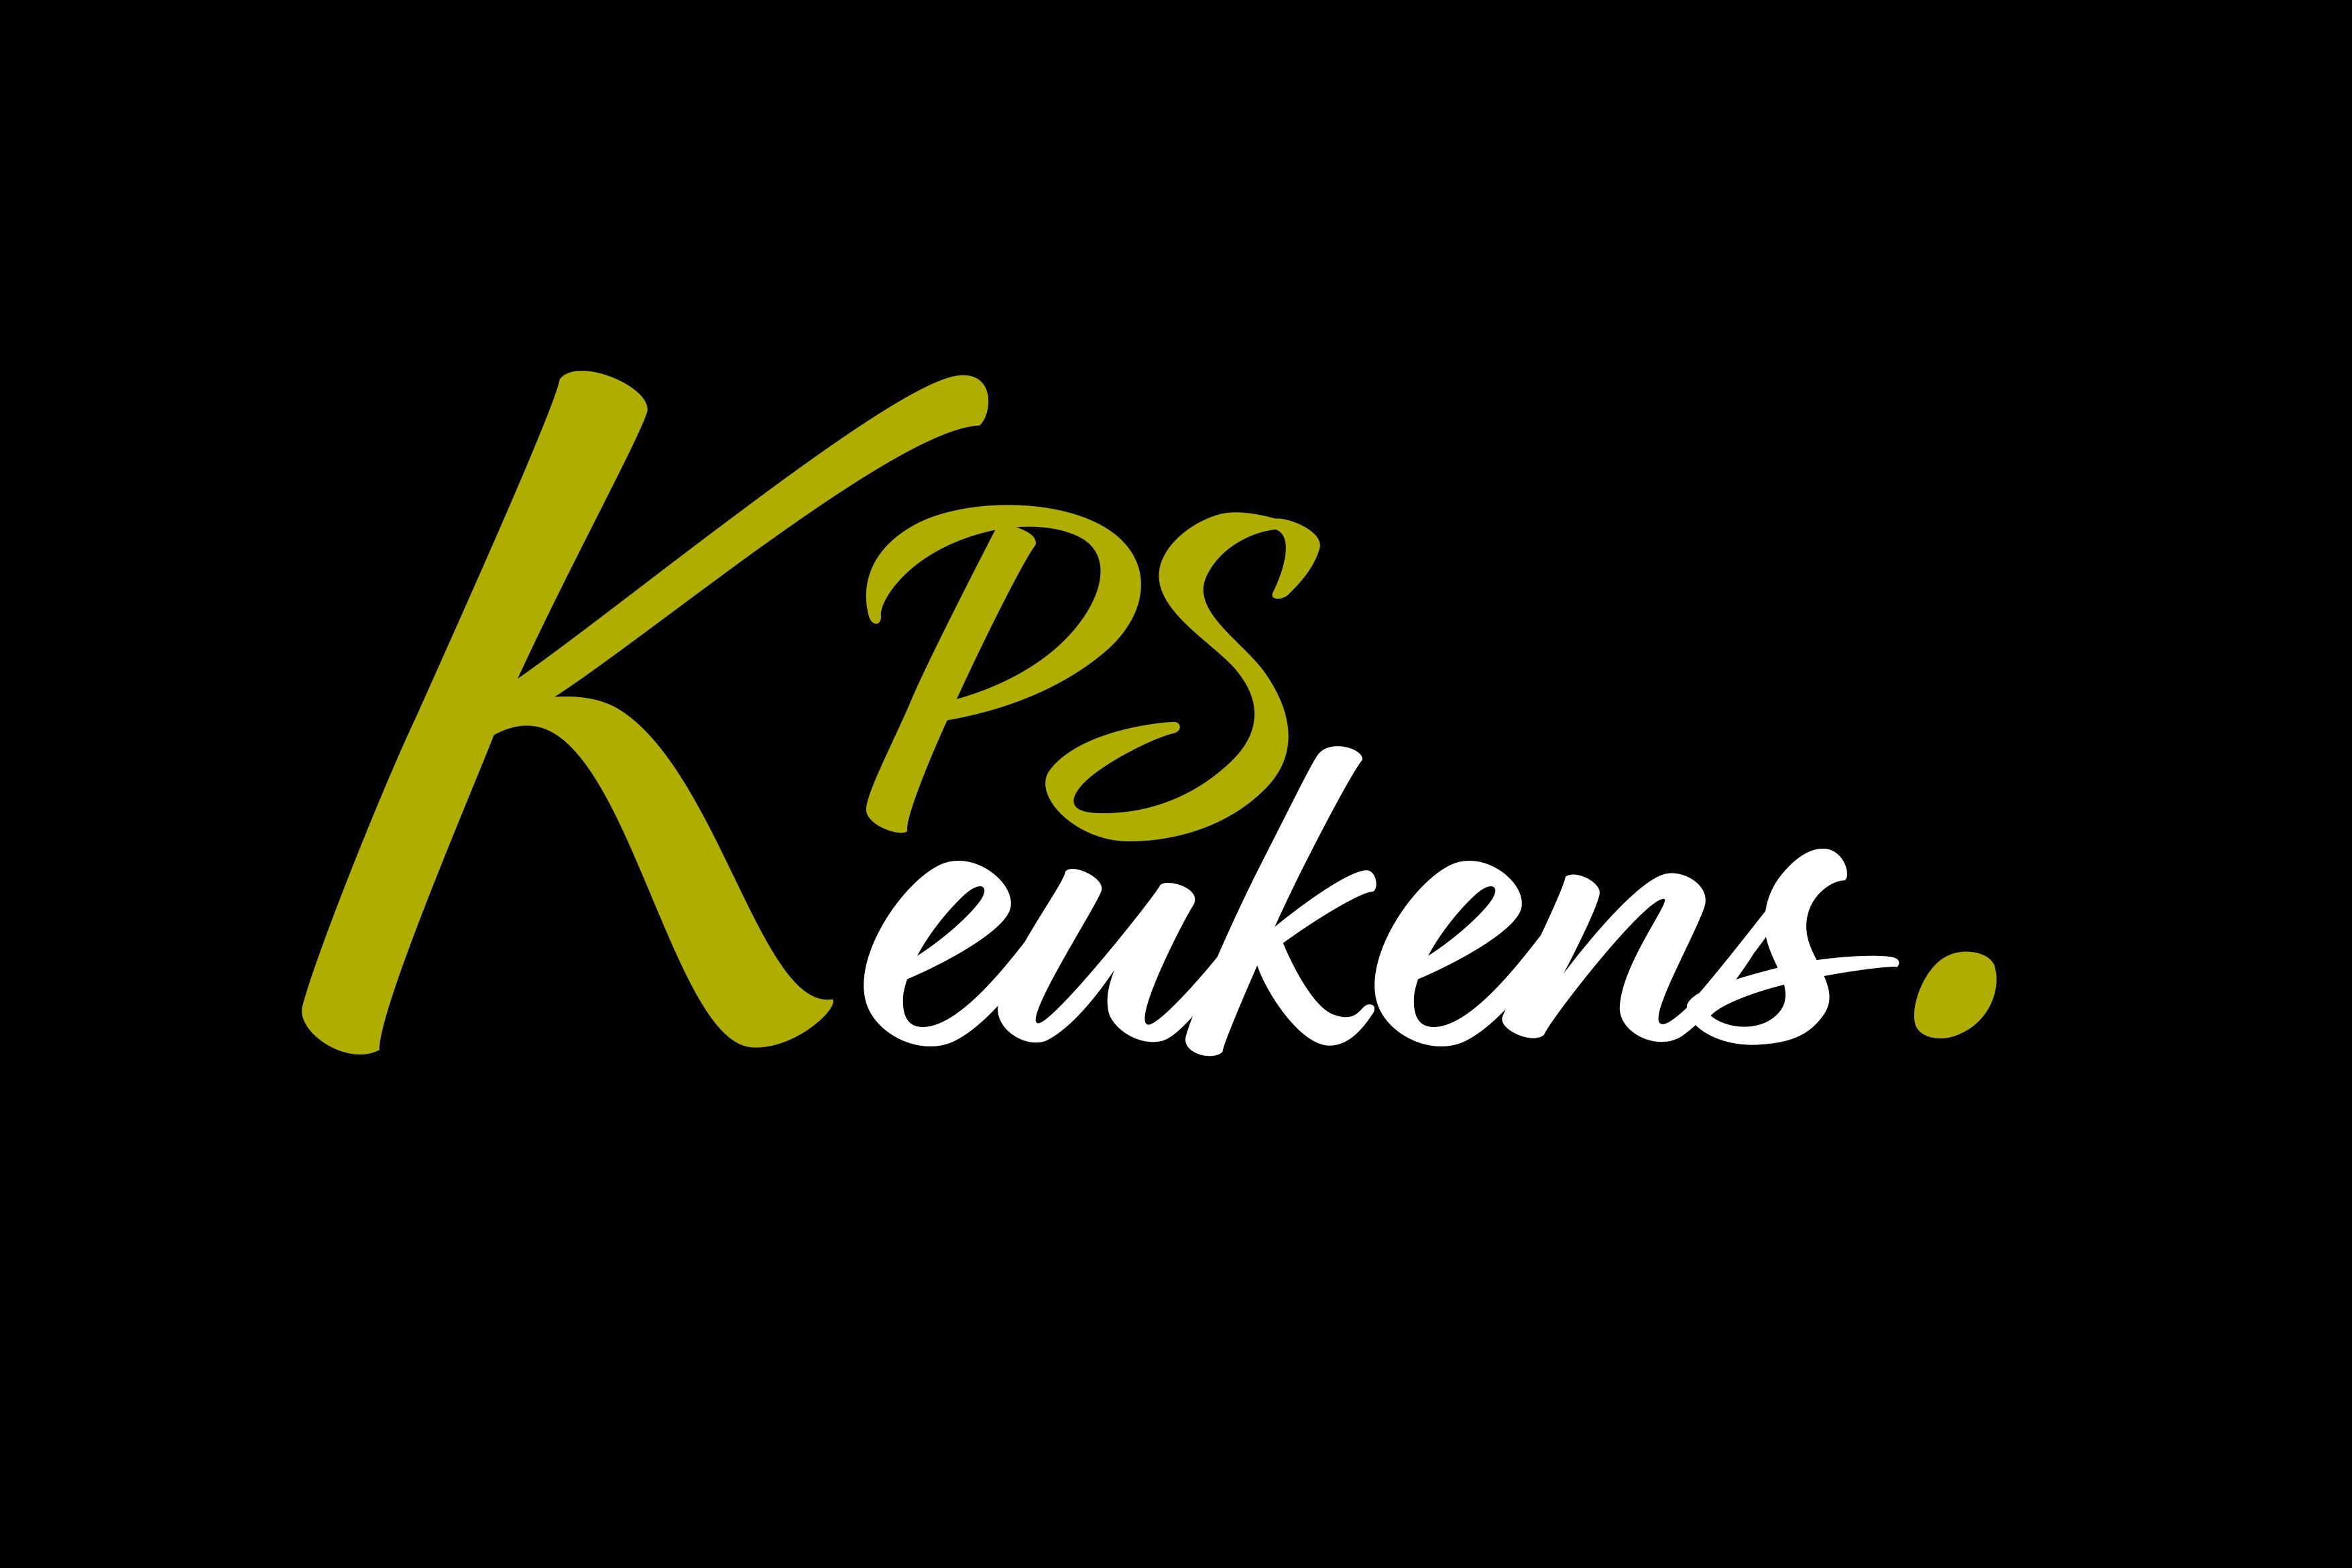 KPS Keukens